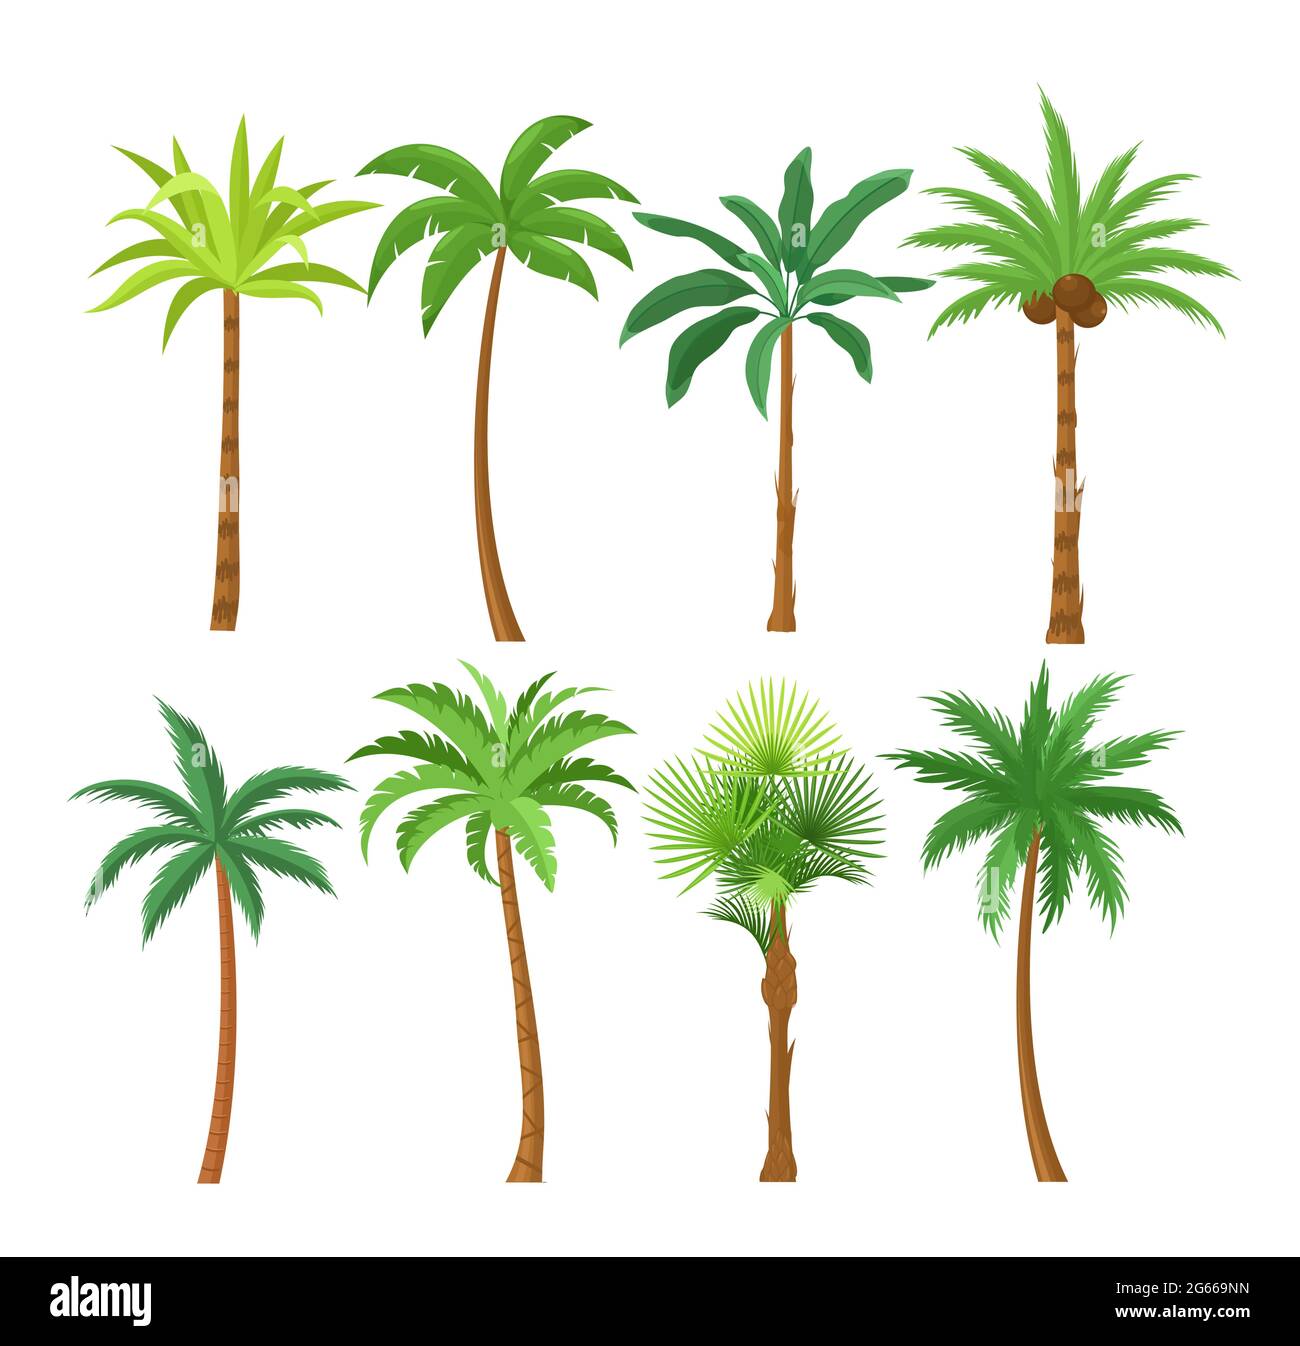 Set mit flachen Vektorgrafiken von Palmen. Exotische Strandpflanzen isoliert Design Elemente Pack. Grüne Blätter Äste und Stämme Cartoon-Sammlung auf Stock Vektor